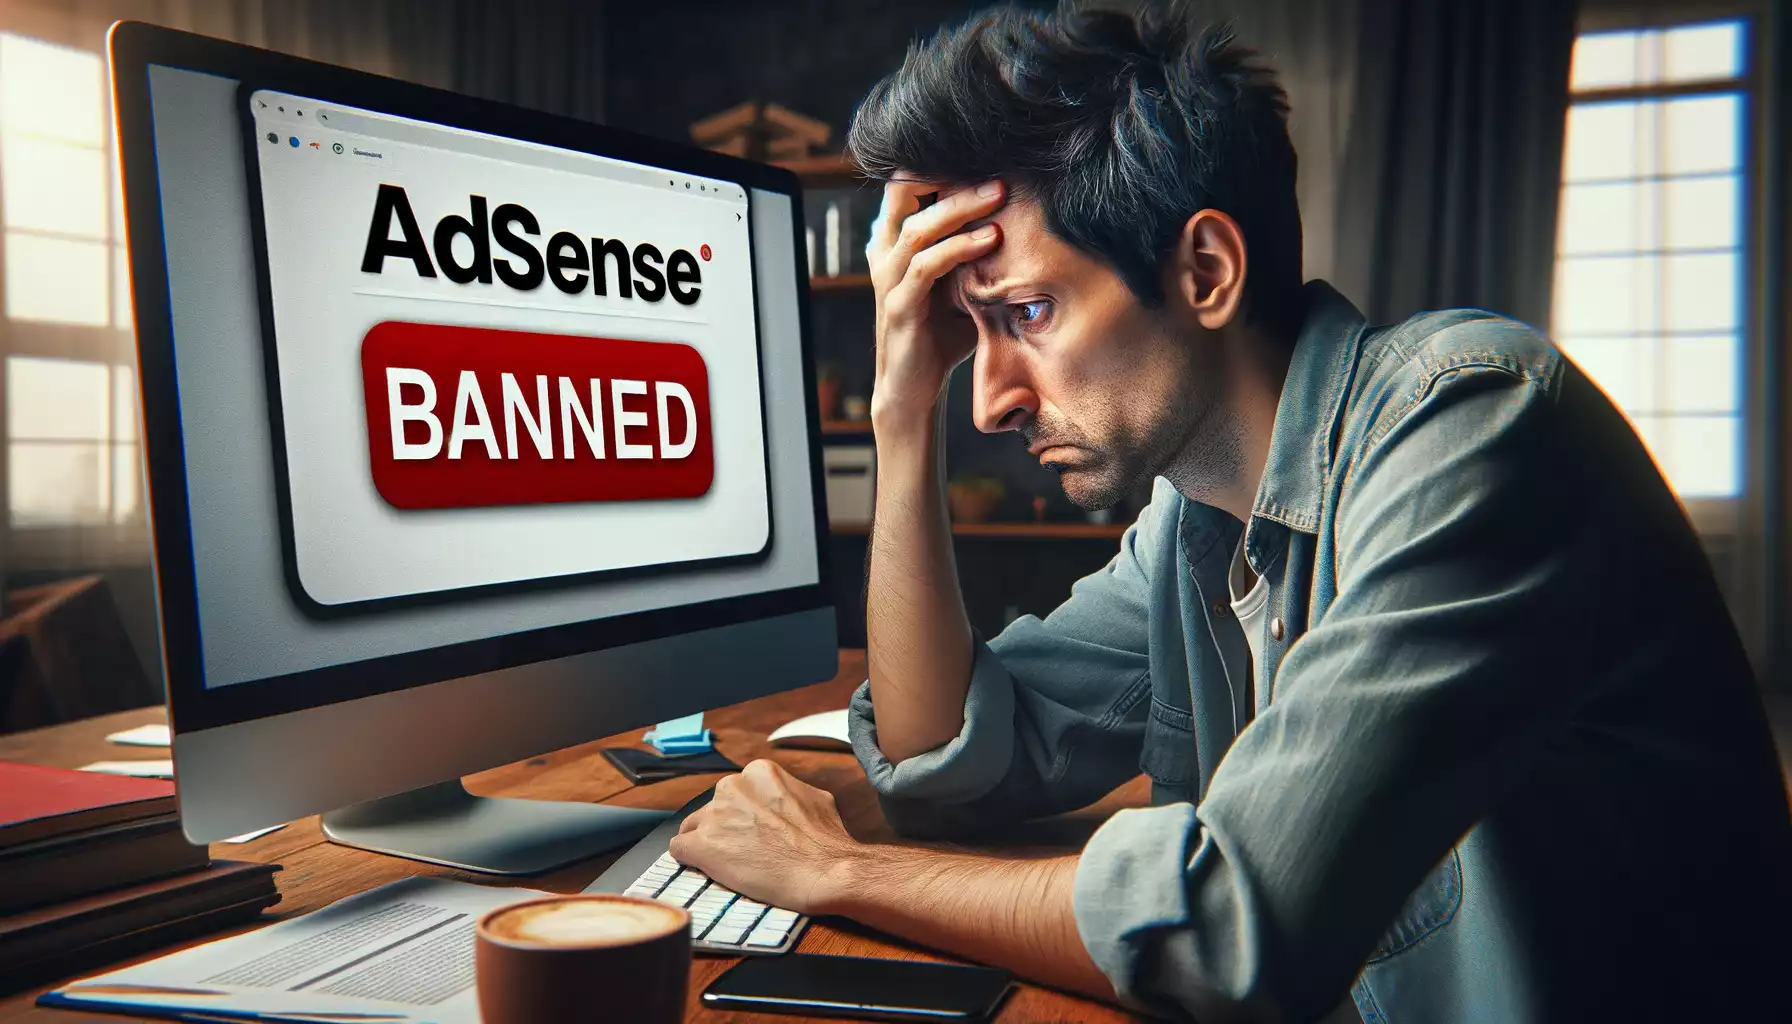 Fui banido no AdSense! Quais as minhas alternativas?